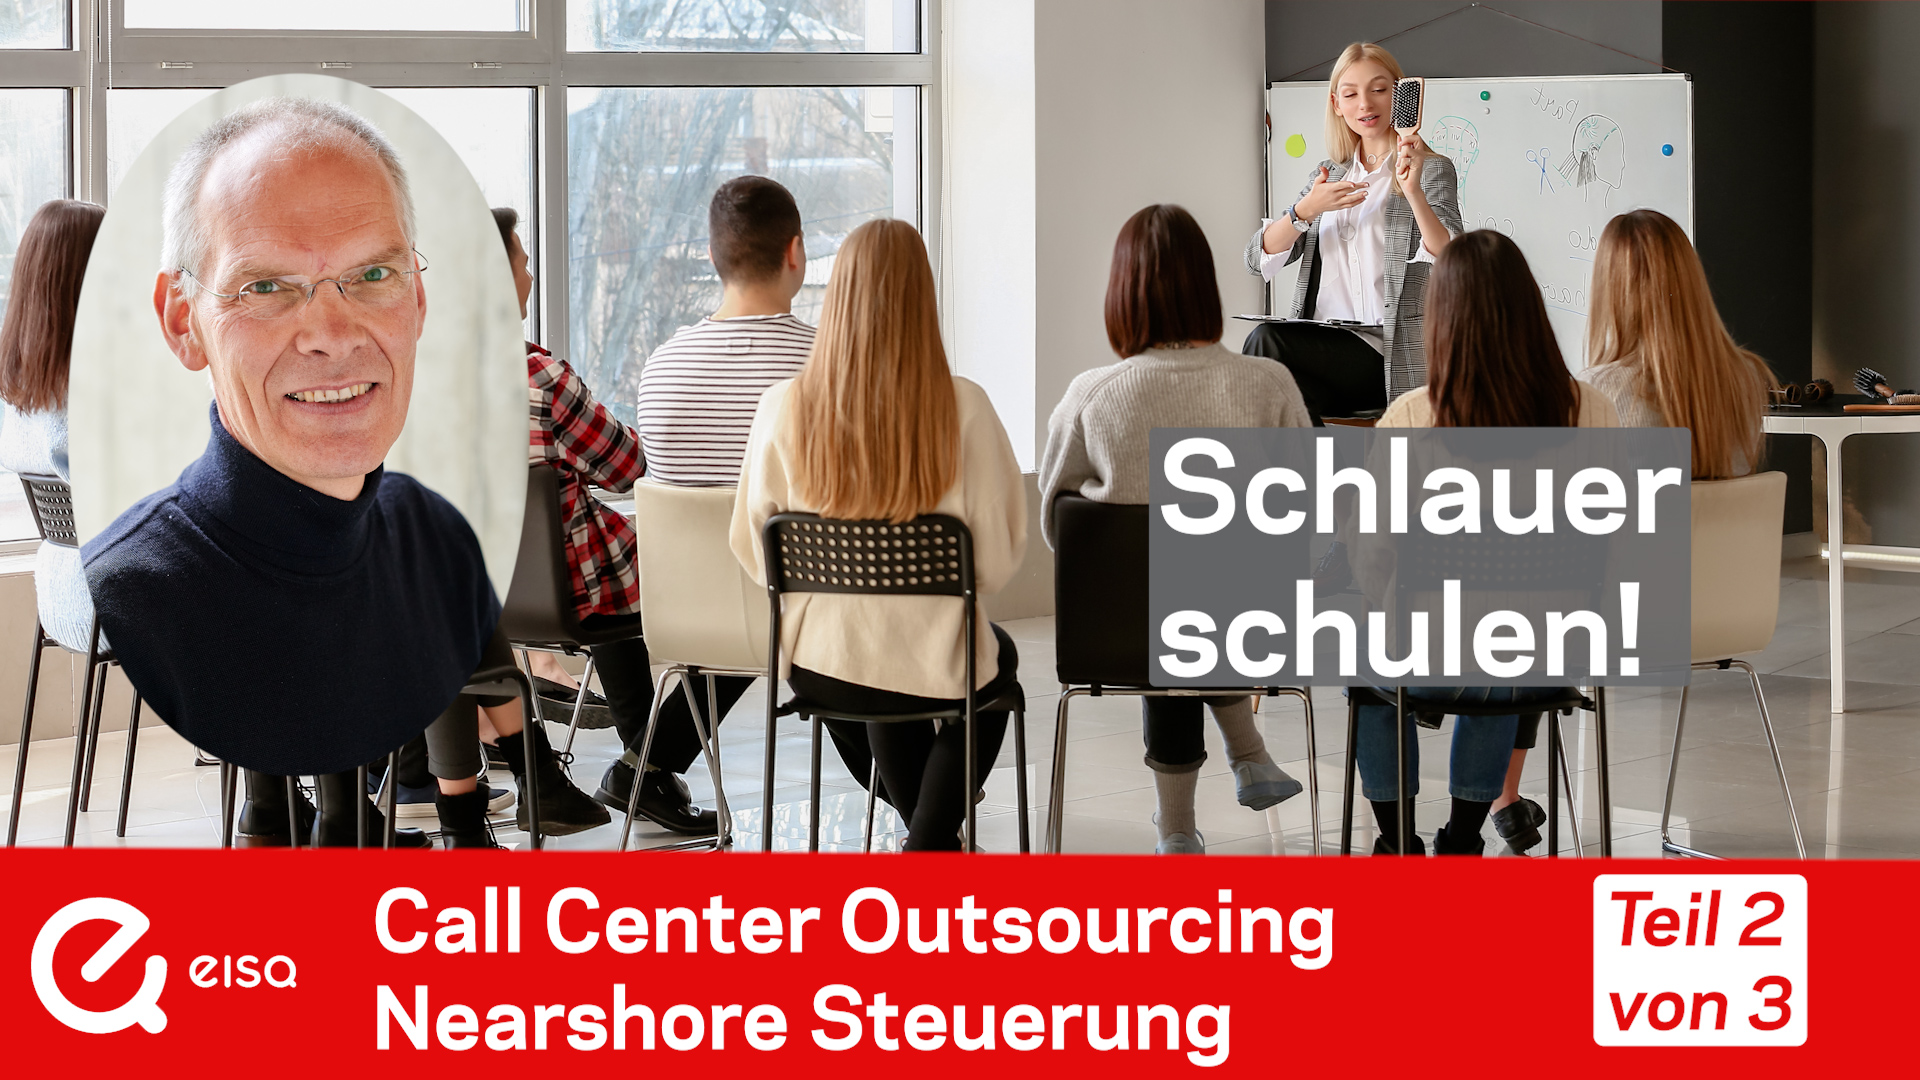 Teil 2 des Video Interviews Nearshore Outsourcing: Schlauer schulen! Attikus Schacht und Bernhard Gandolf diskutieren